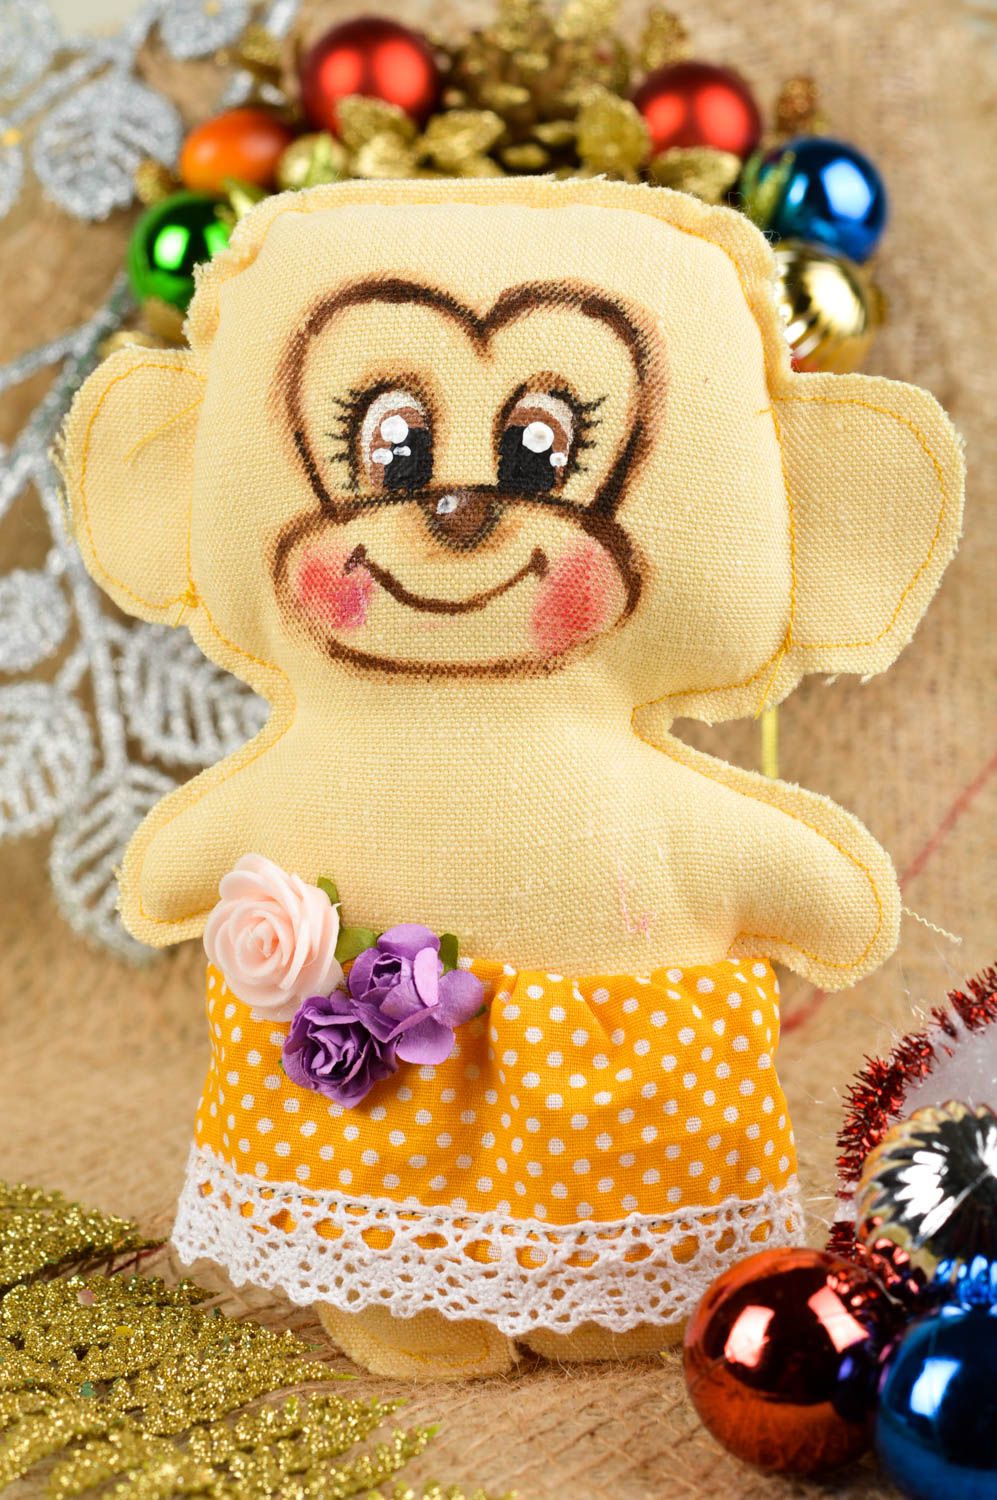 Игрушка ручной работы игрушка обезьянка в платье оригинальная игрушка из хлопка фото 1